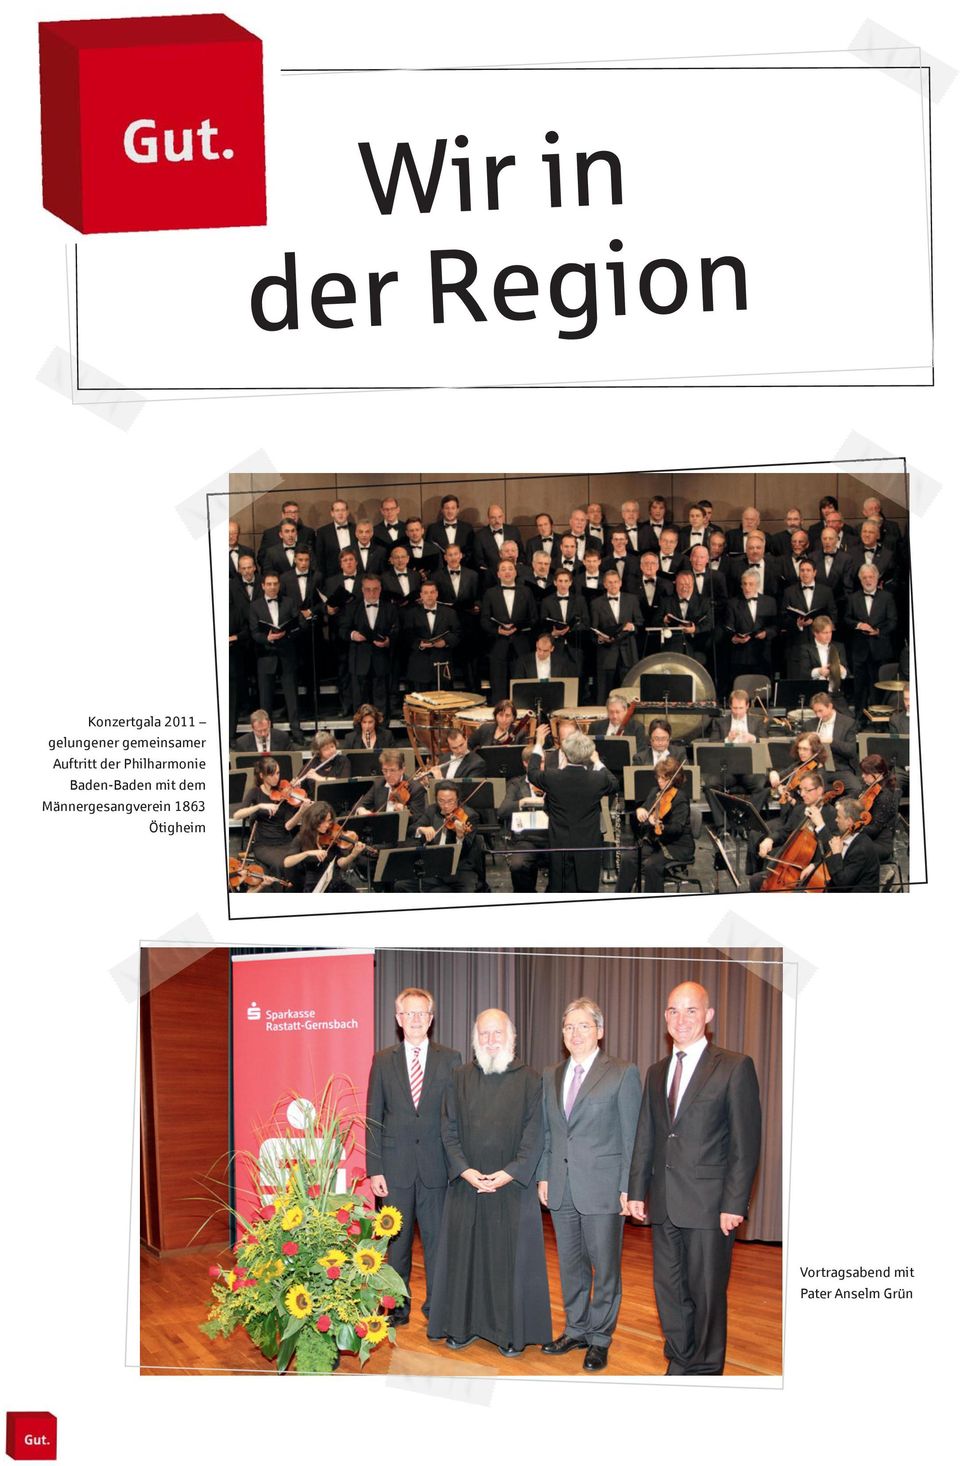 Philharmonie Baden-Baden mit dem